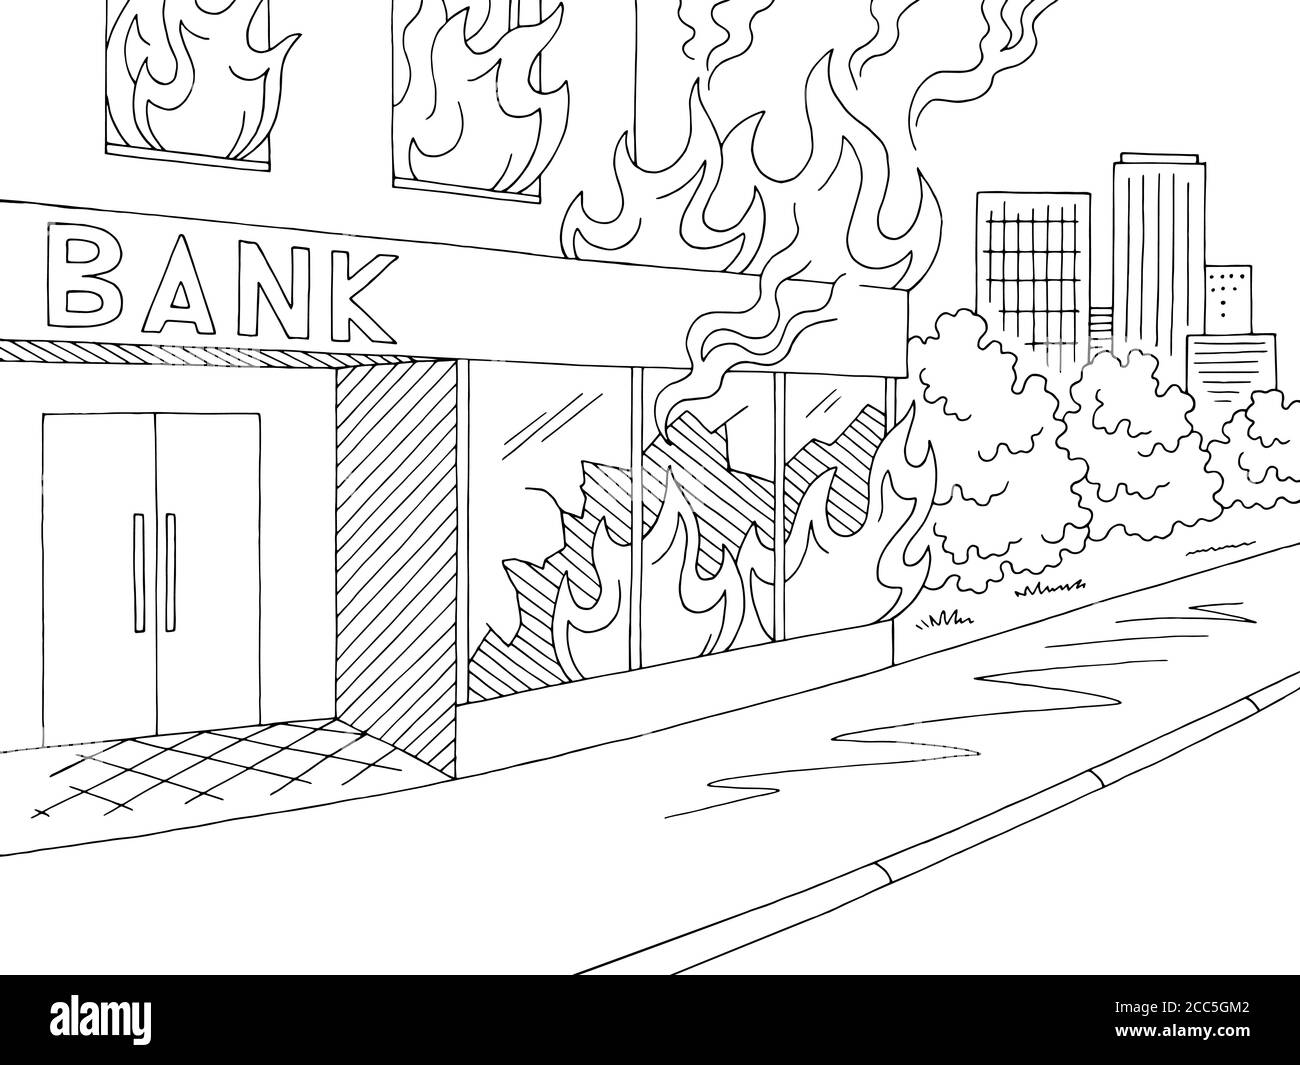 Feuer in Bank außen Grafik schwarz weiß Skizze Stadt Landschaft Illustrationsvektor Stock Vektor